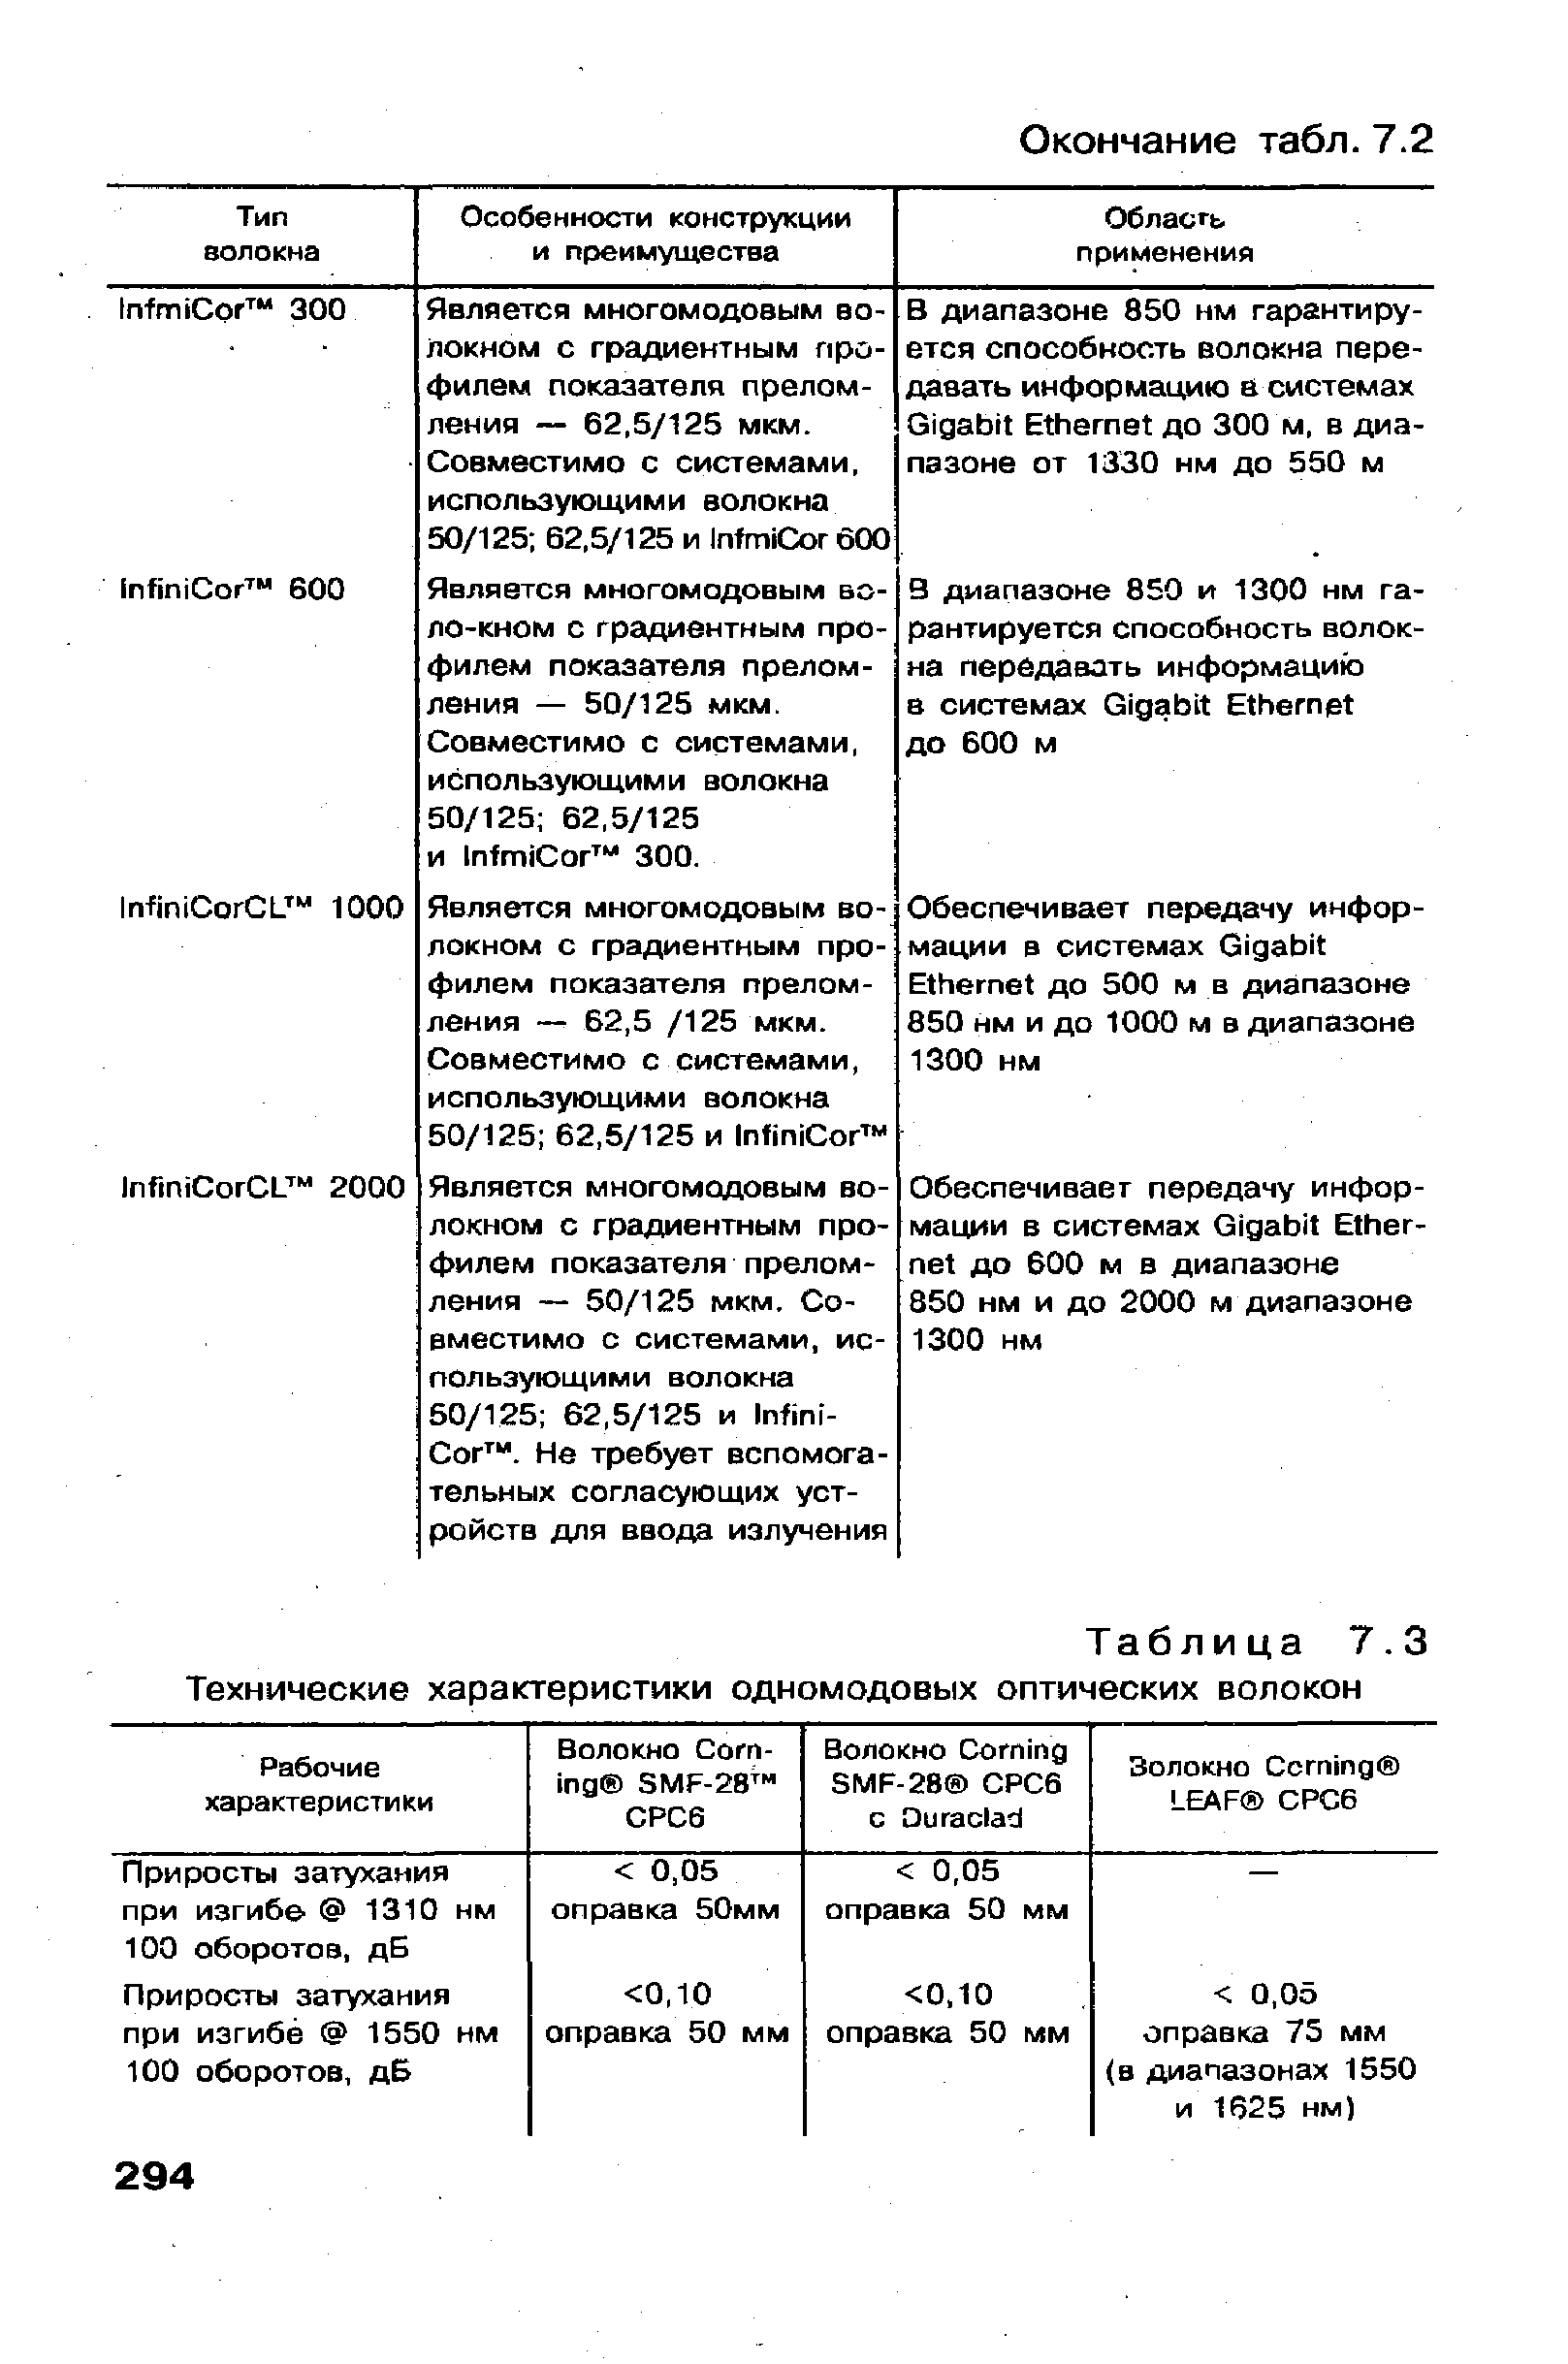 Таблица 7.3 Технические характеристики одномодовых оптических волокон
